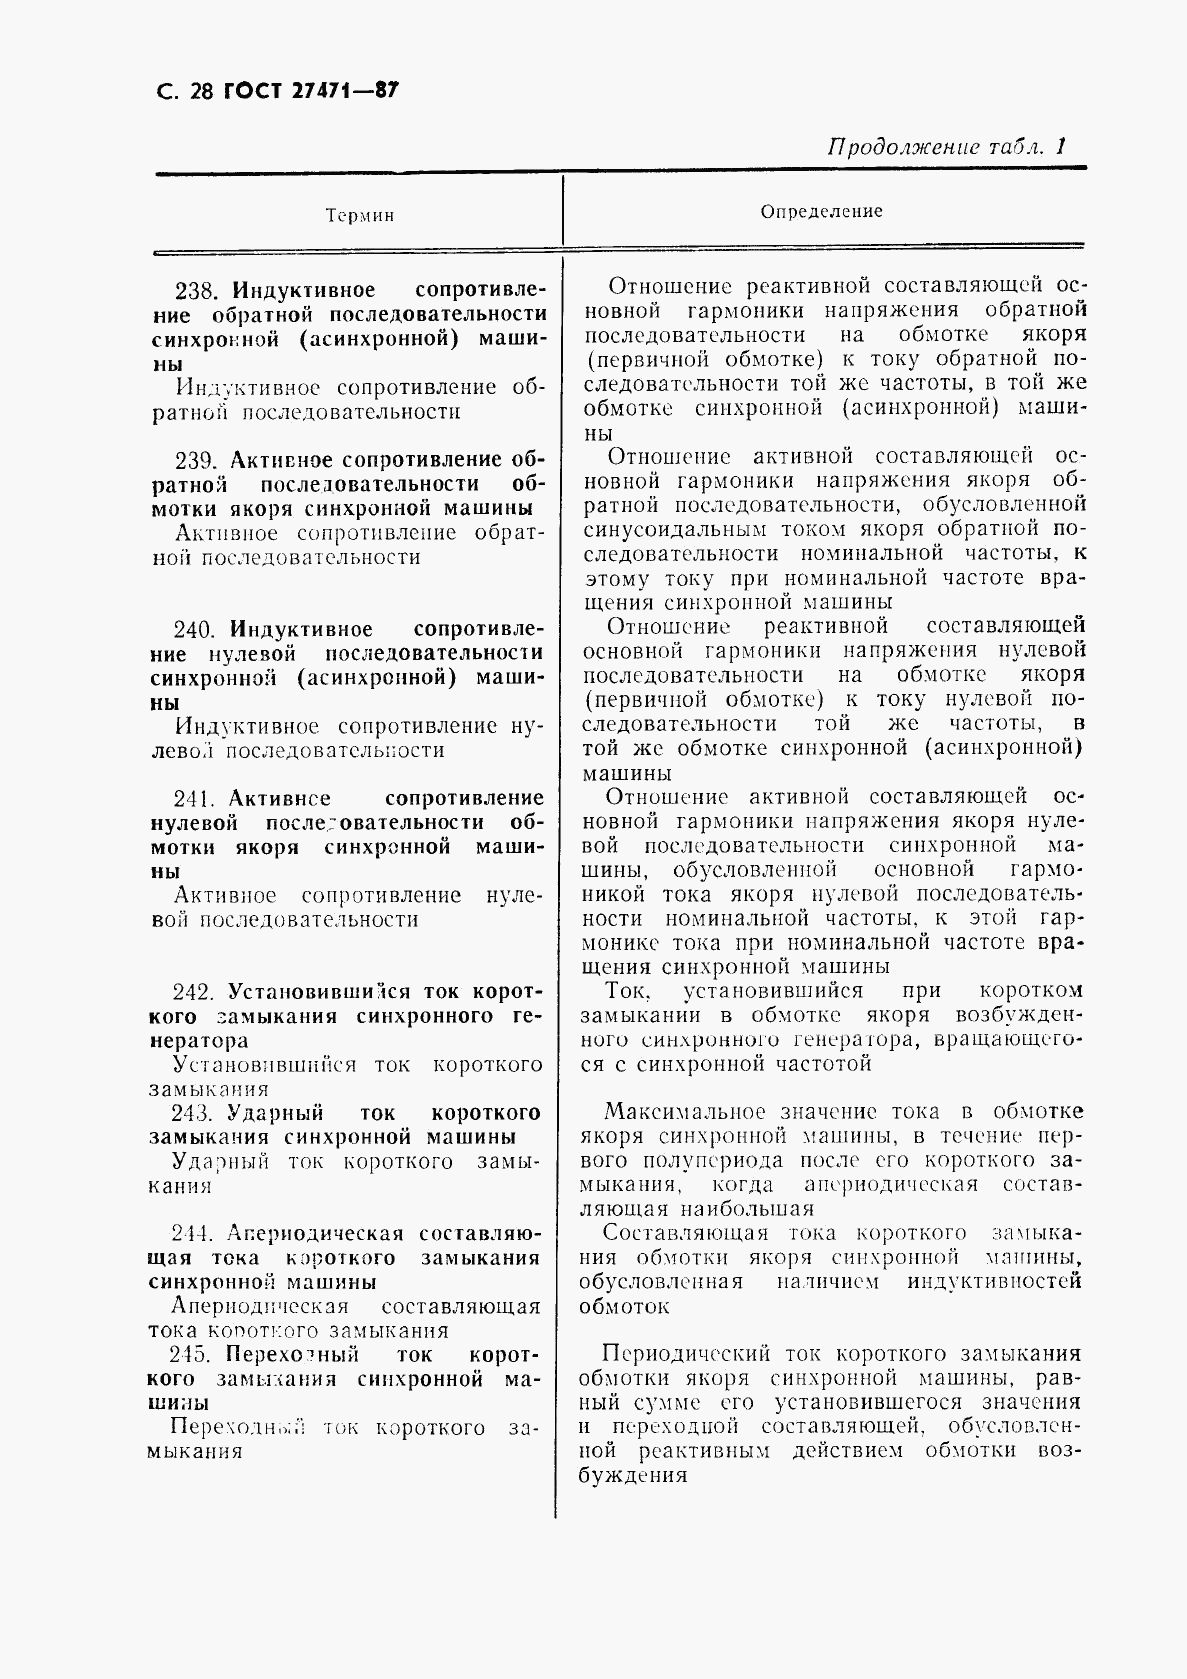 ГОСТ 27471-87, страница 29